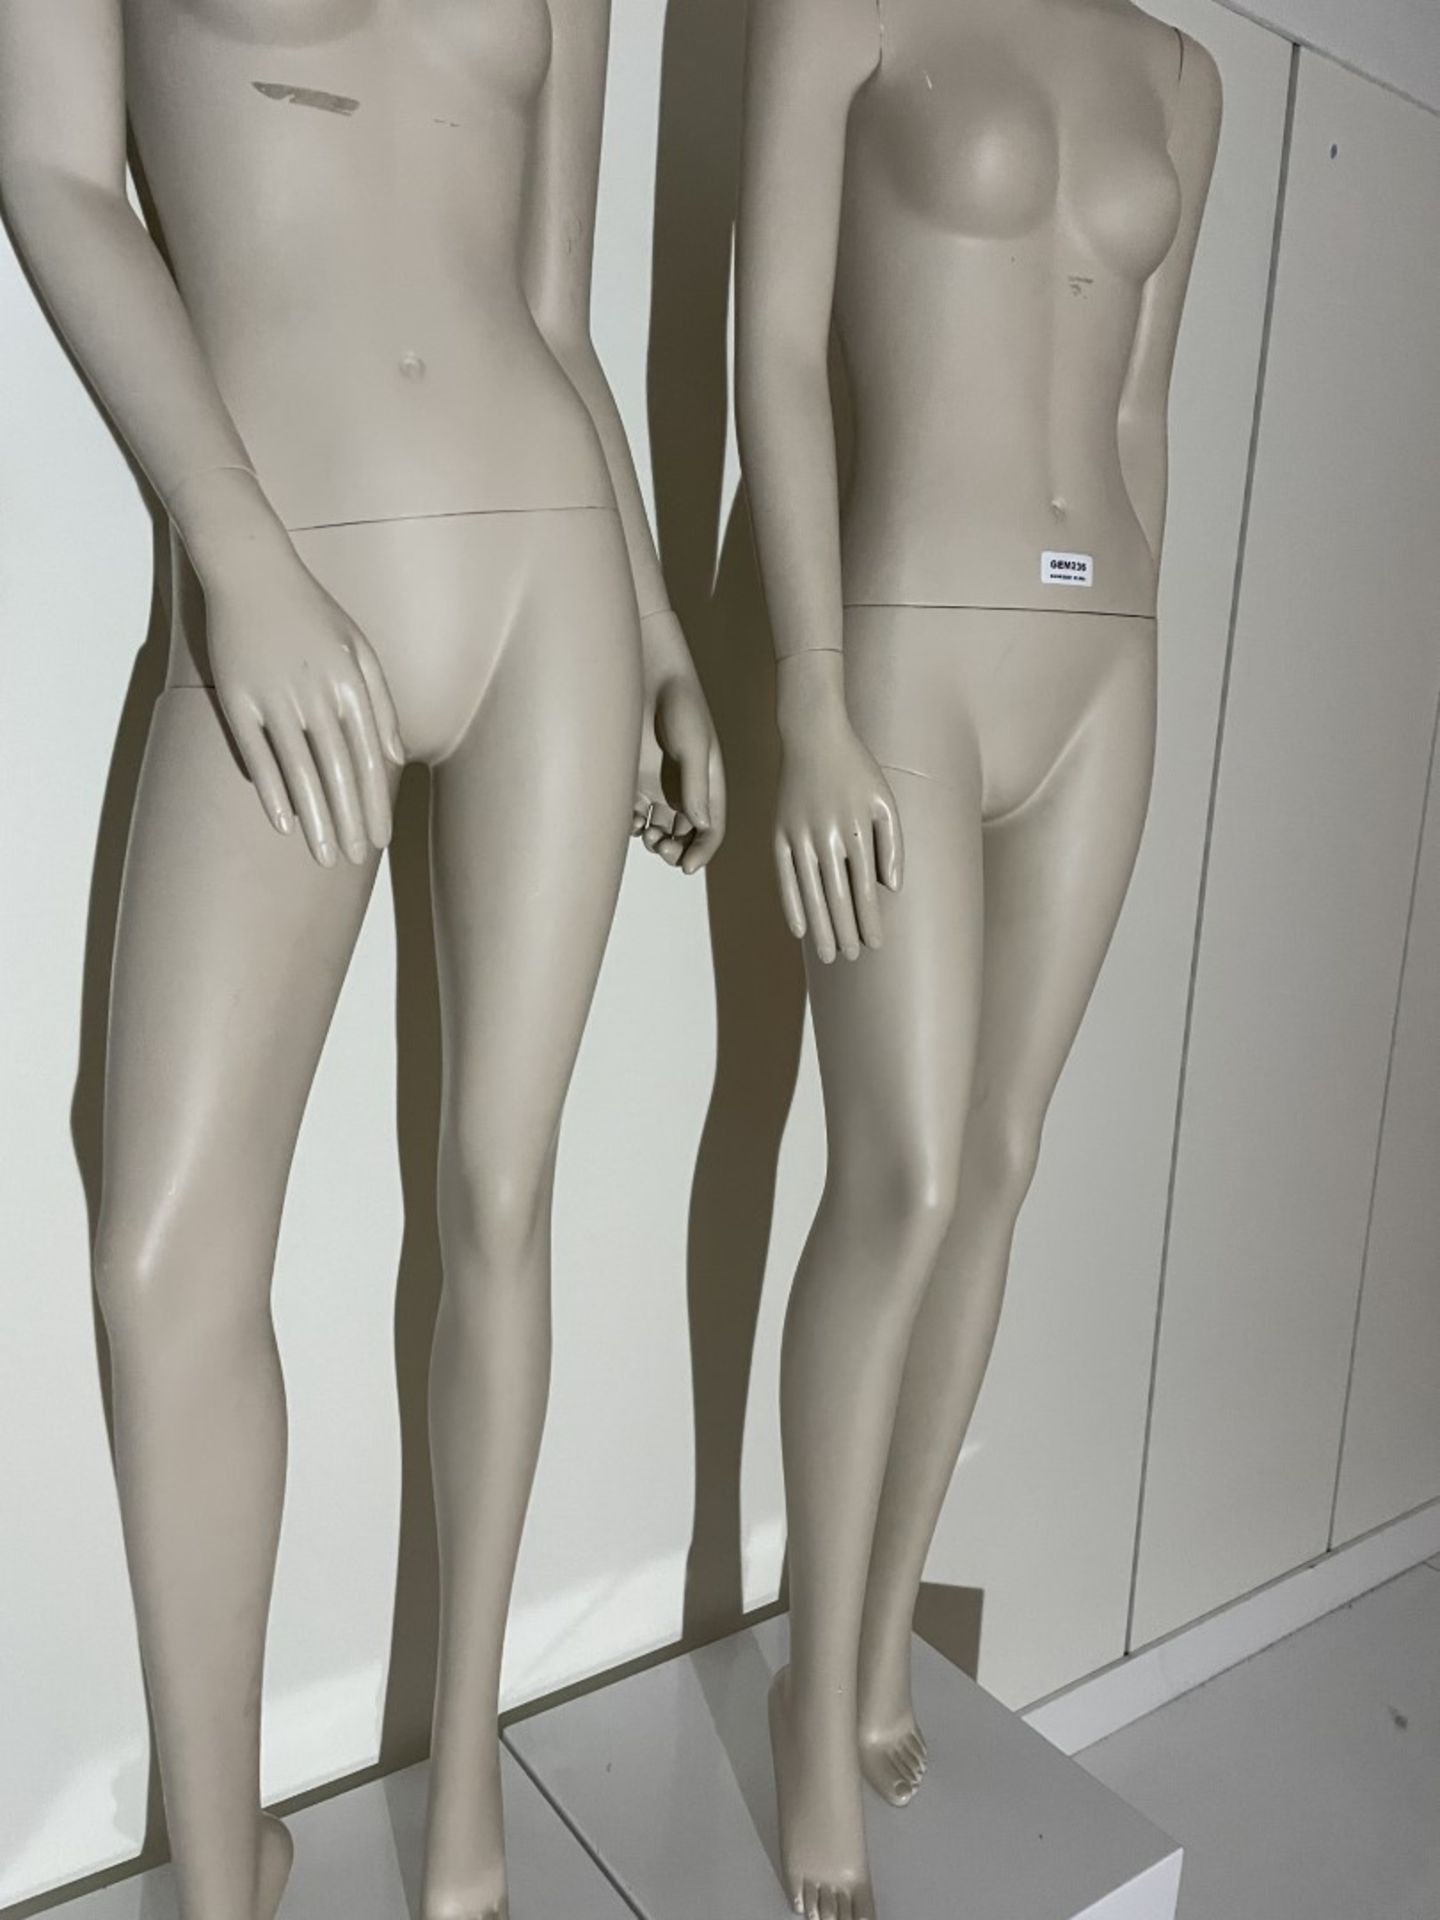 2 x Full Size Female Mannequins on Pedestal Plinth Stands - CL670 - Ref: GEM236 - Location: - Image 7 of 11